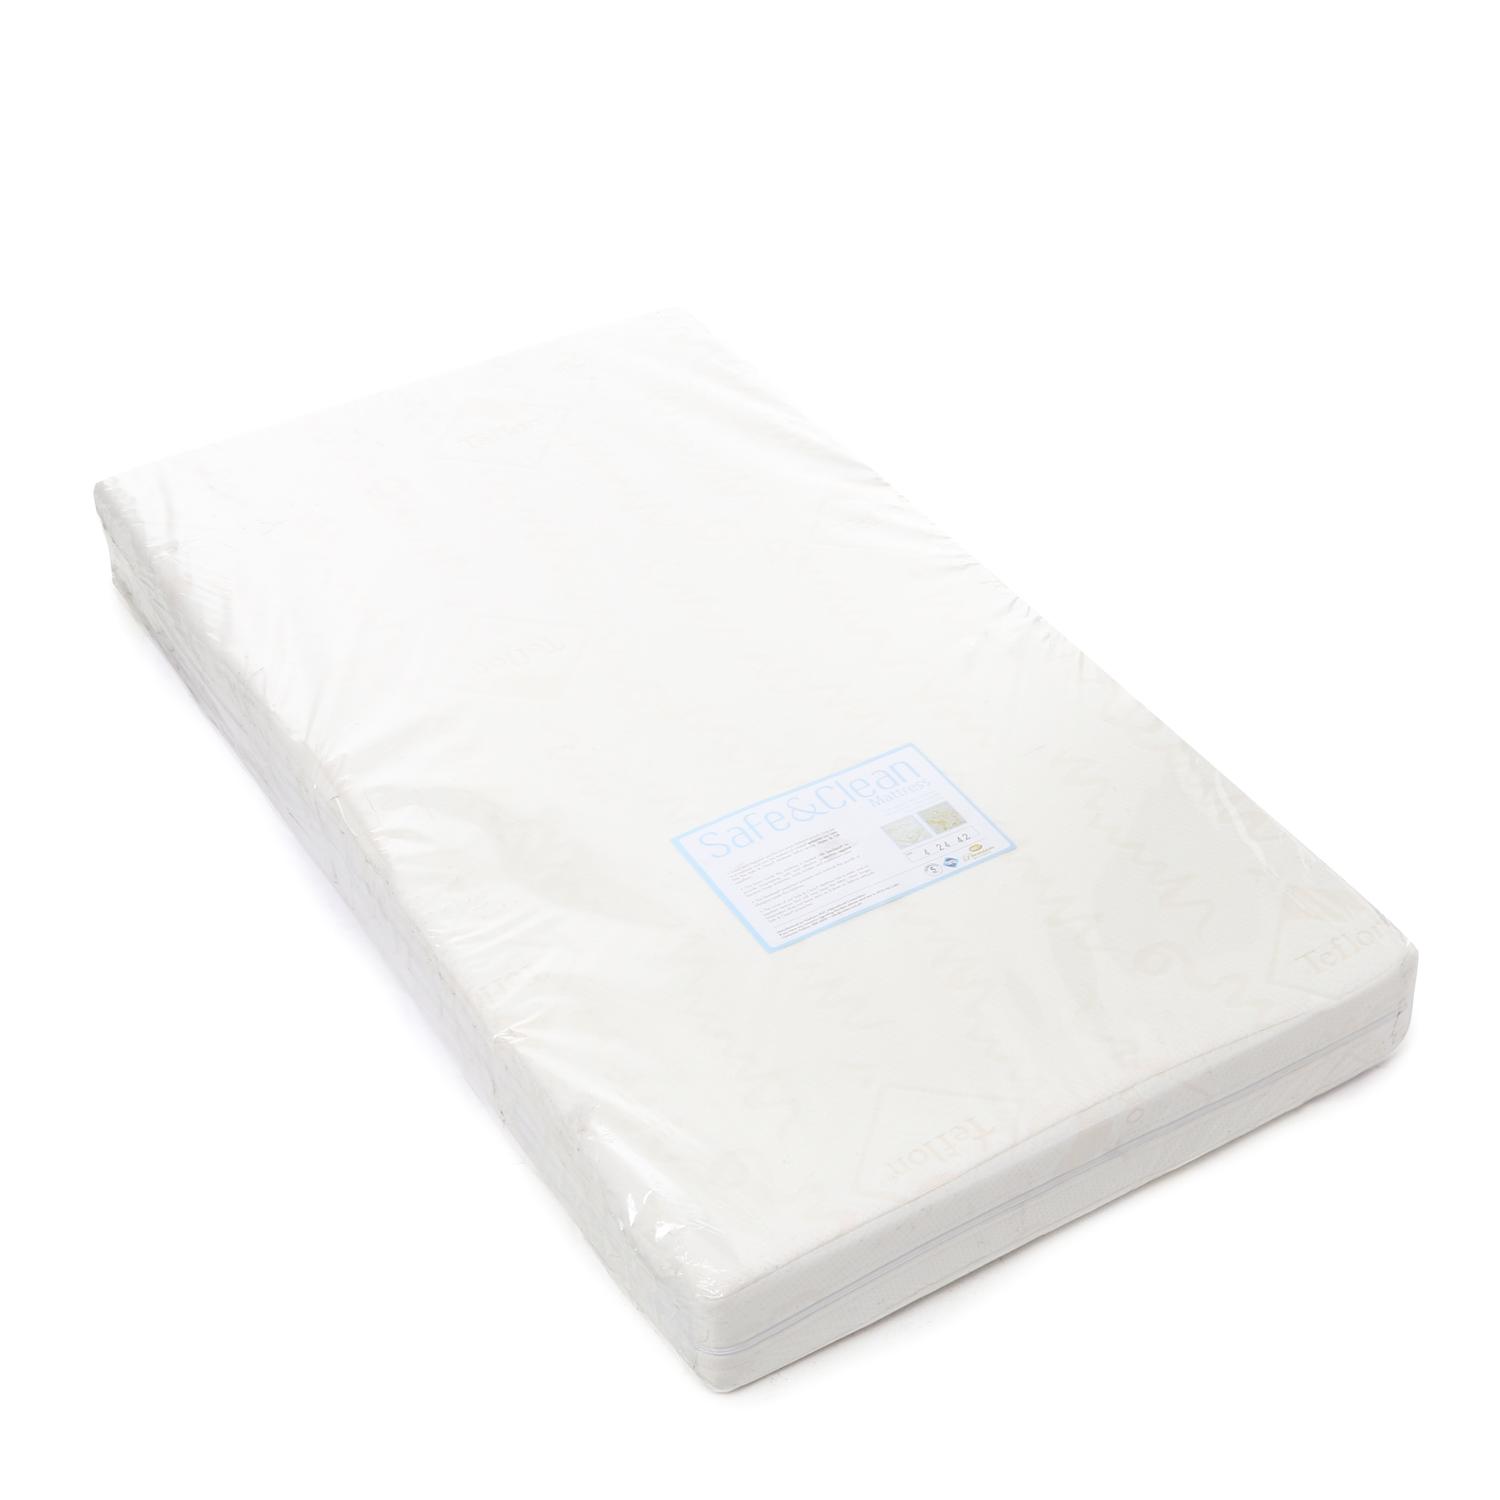 uratex baby mattress